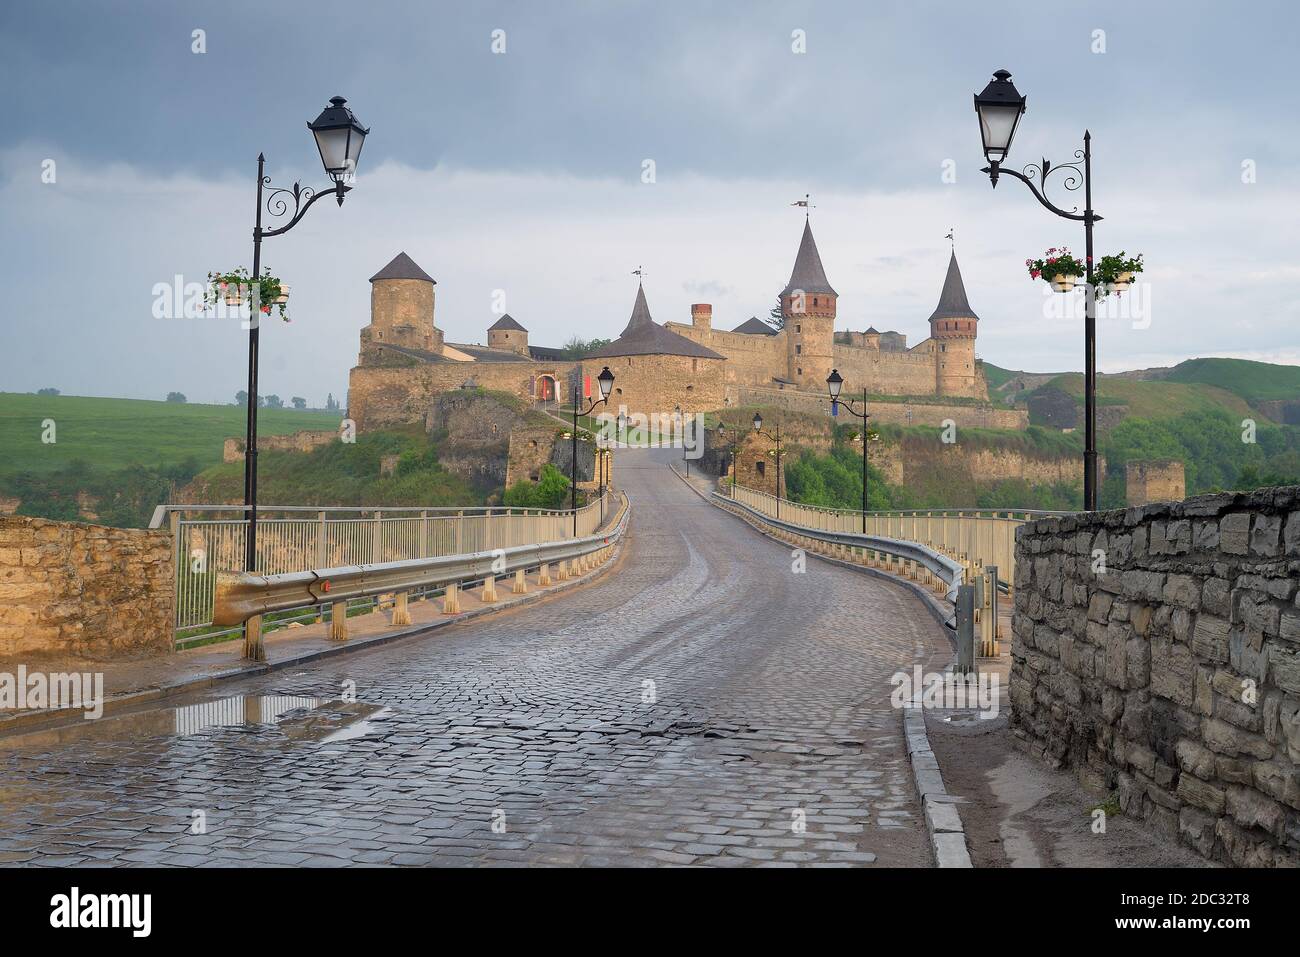 Road leading to the medieval castle. Fortification historical landmark. Cityscape at morning. Kamenetz-Podolsk, Ukraine, Europe Stock Photo